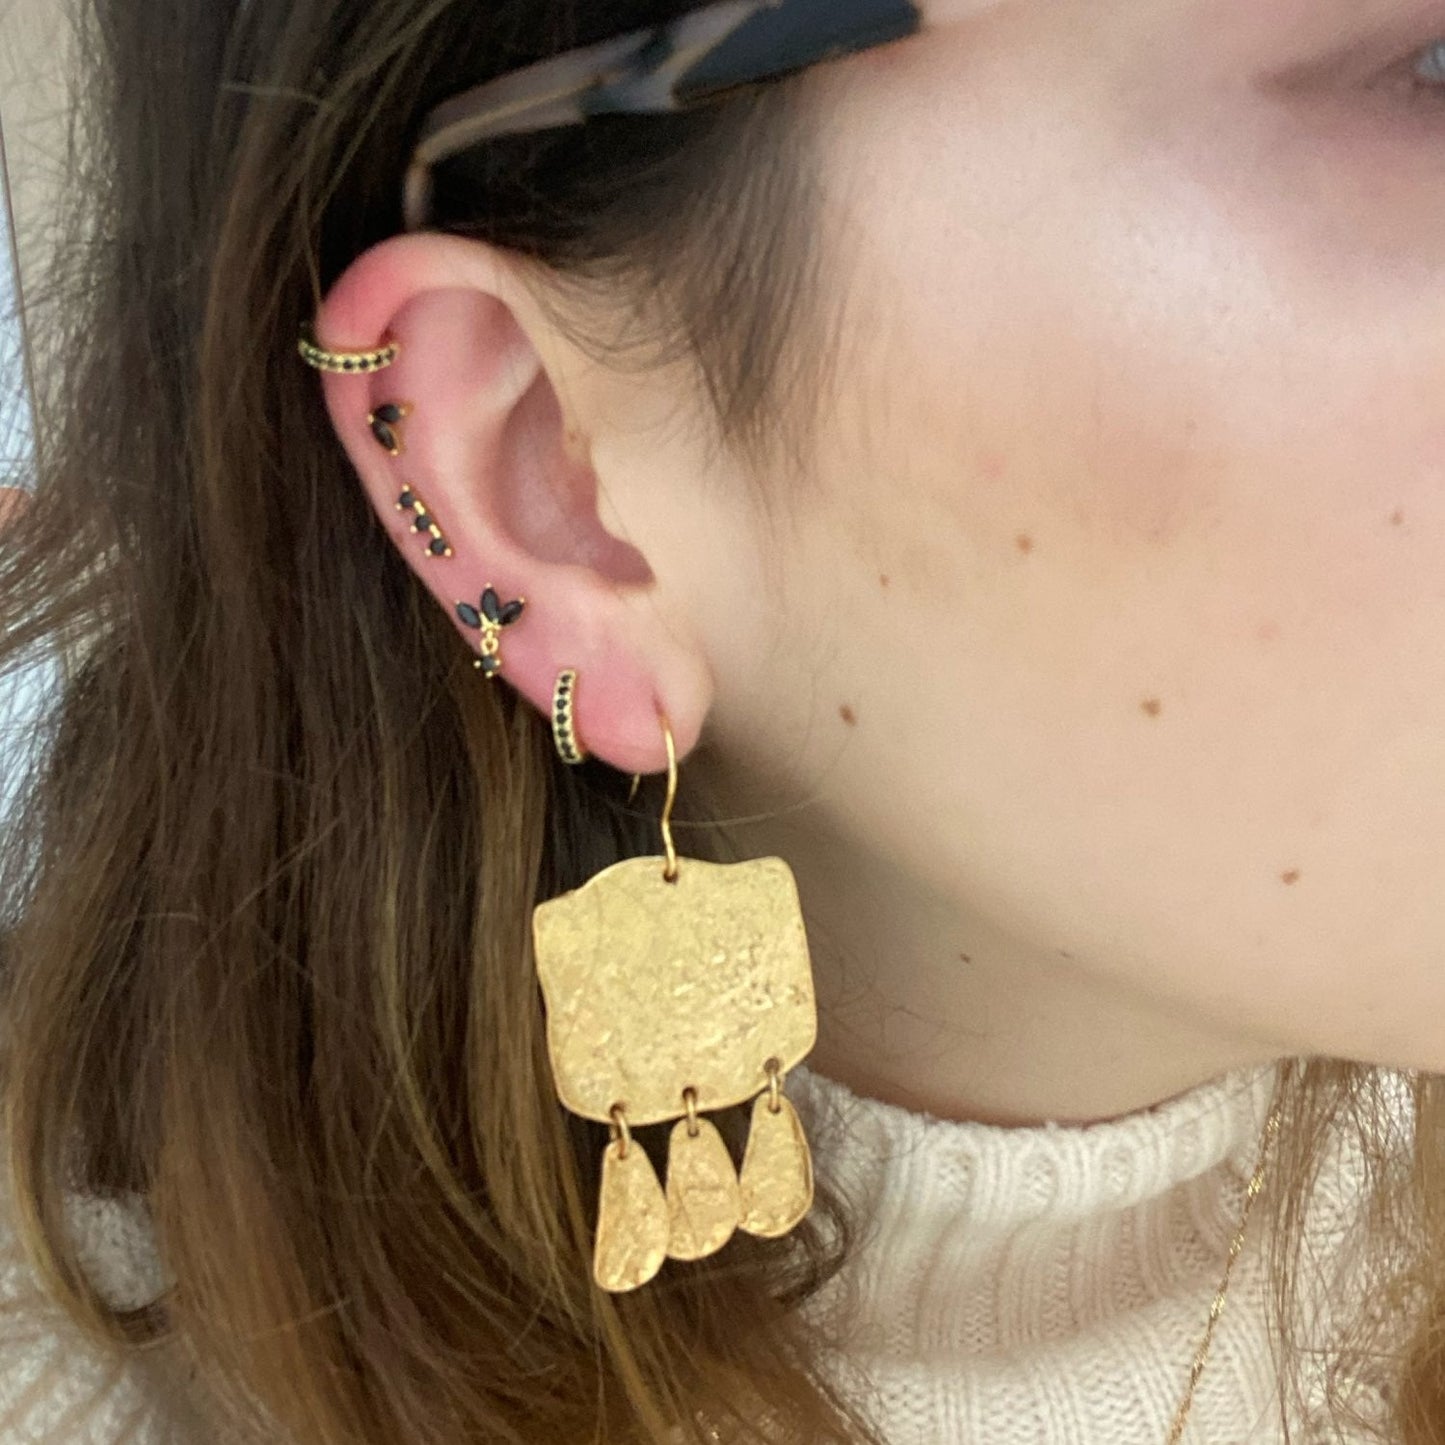 A woman wearing multiple gold ear piercings.